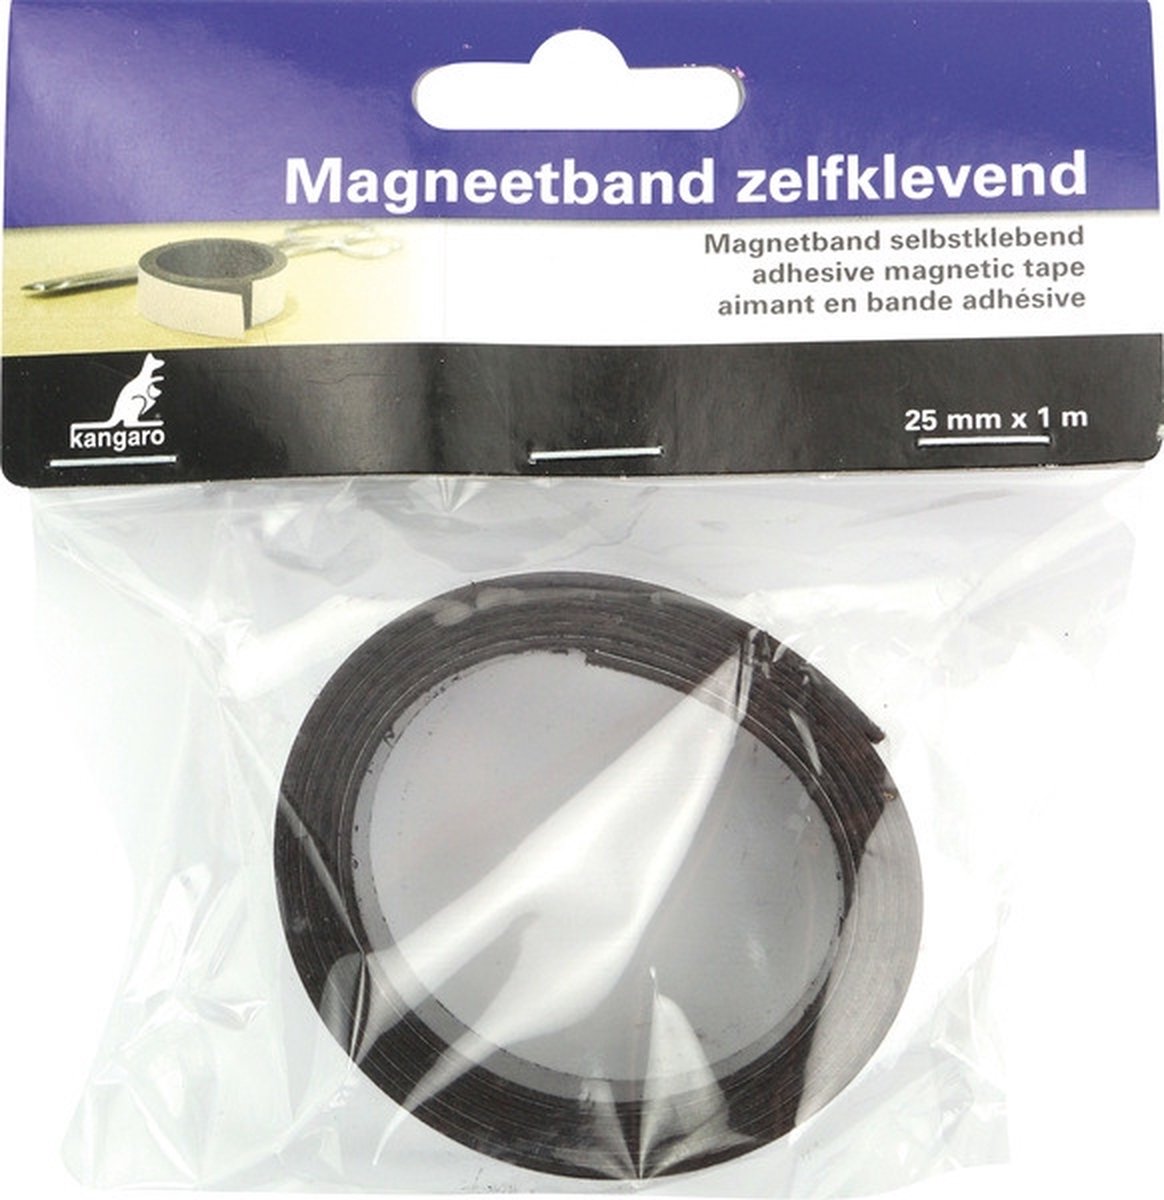 Kangaro magneetband - zelf-klevend - 25mm x 1 meter - K-5061 - Kangaro